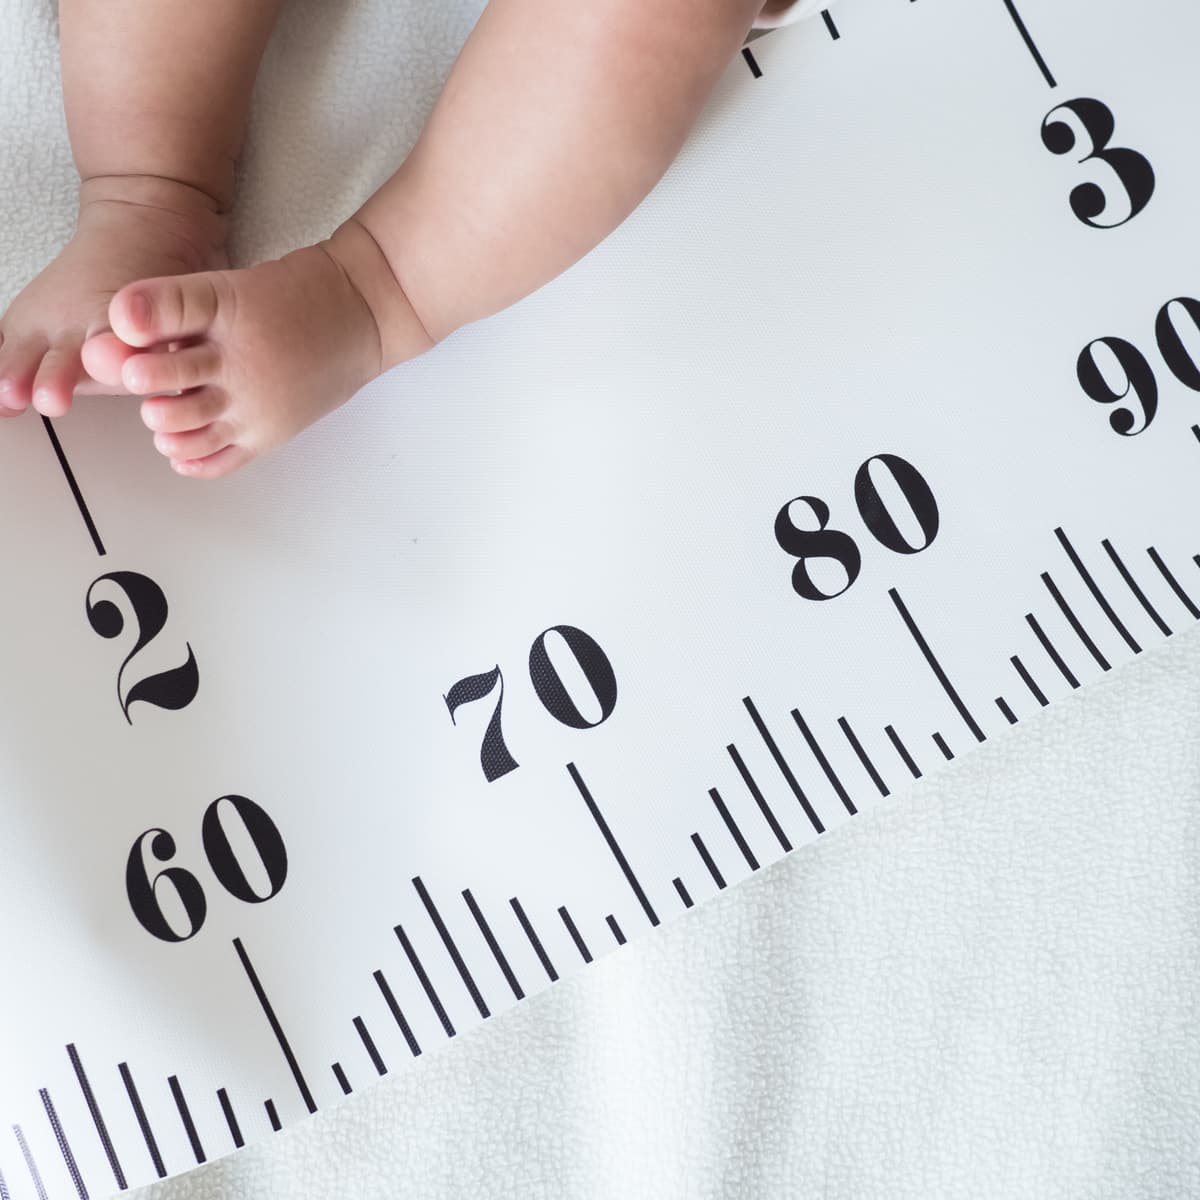 [Kinh nghiệm] Mách mẹ 5 cách tăng chiều cao cho trẻ sơ sinh hiệu quả trong 1 tháng